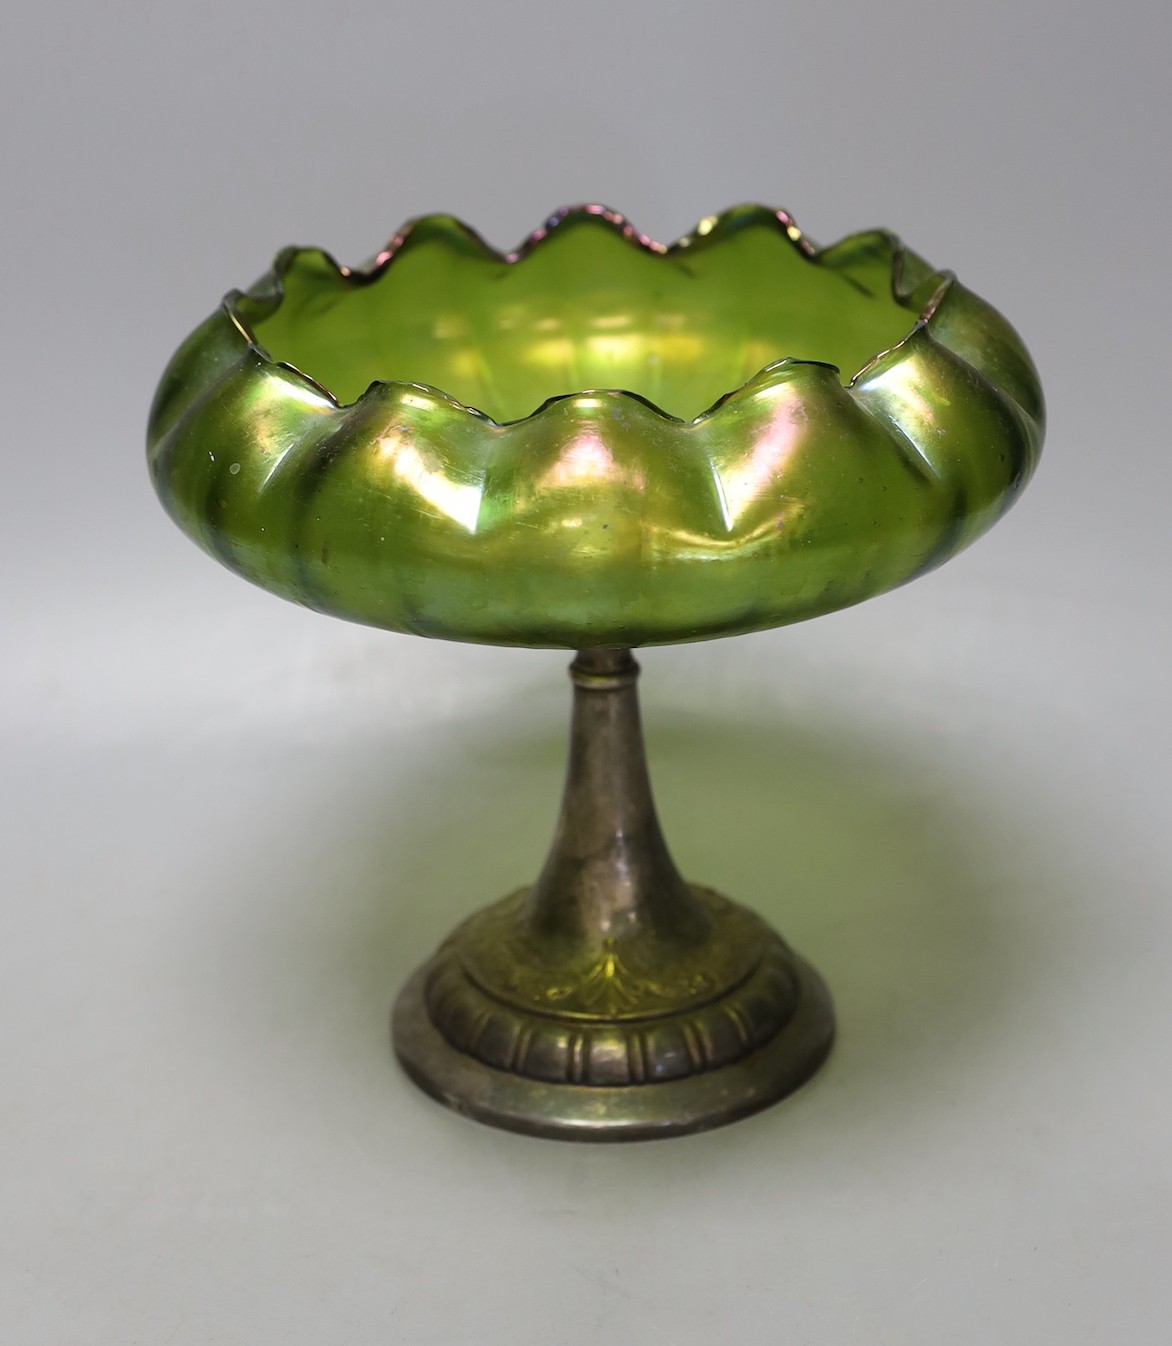 A WMF pedestal iridescent bowl - 19cm tall